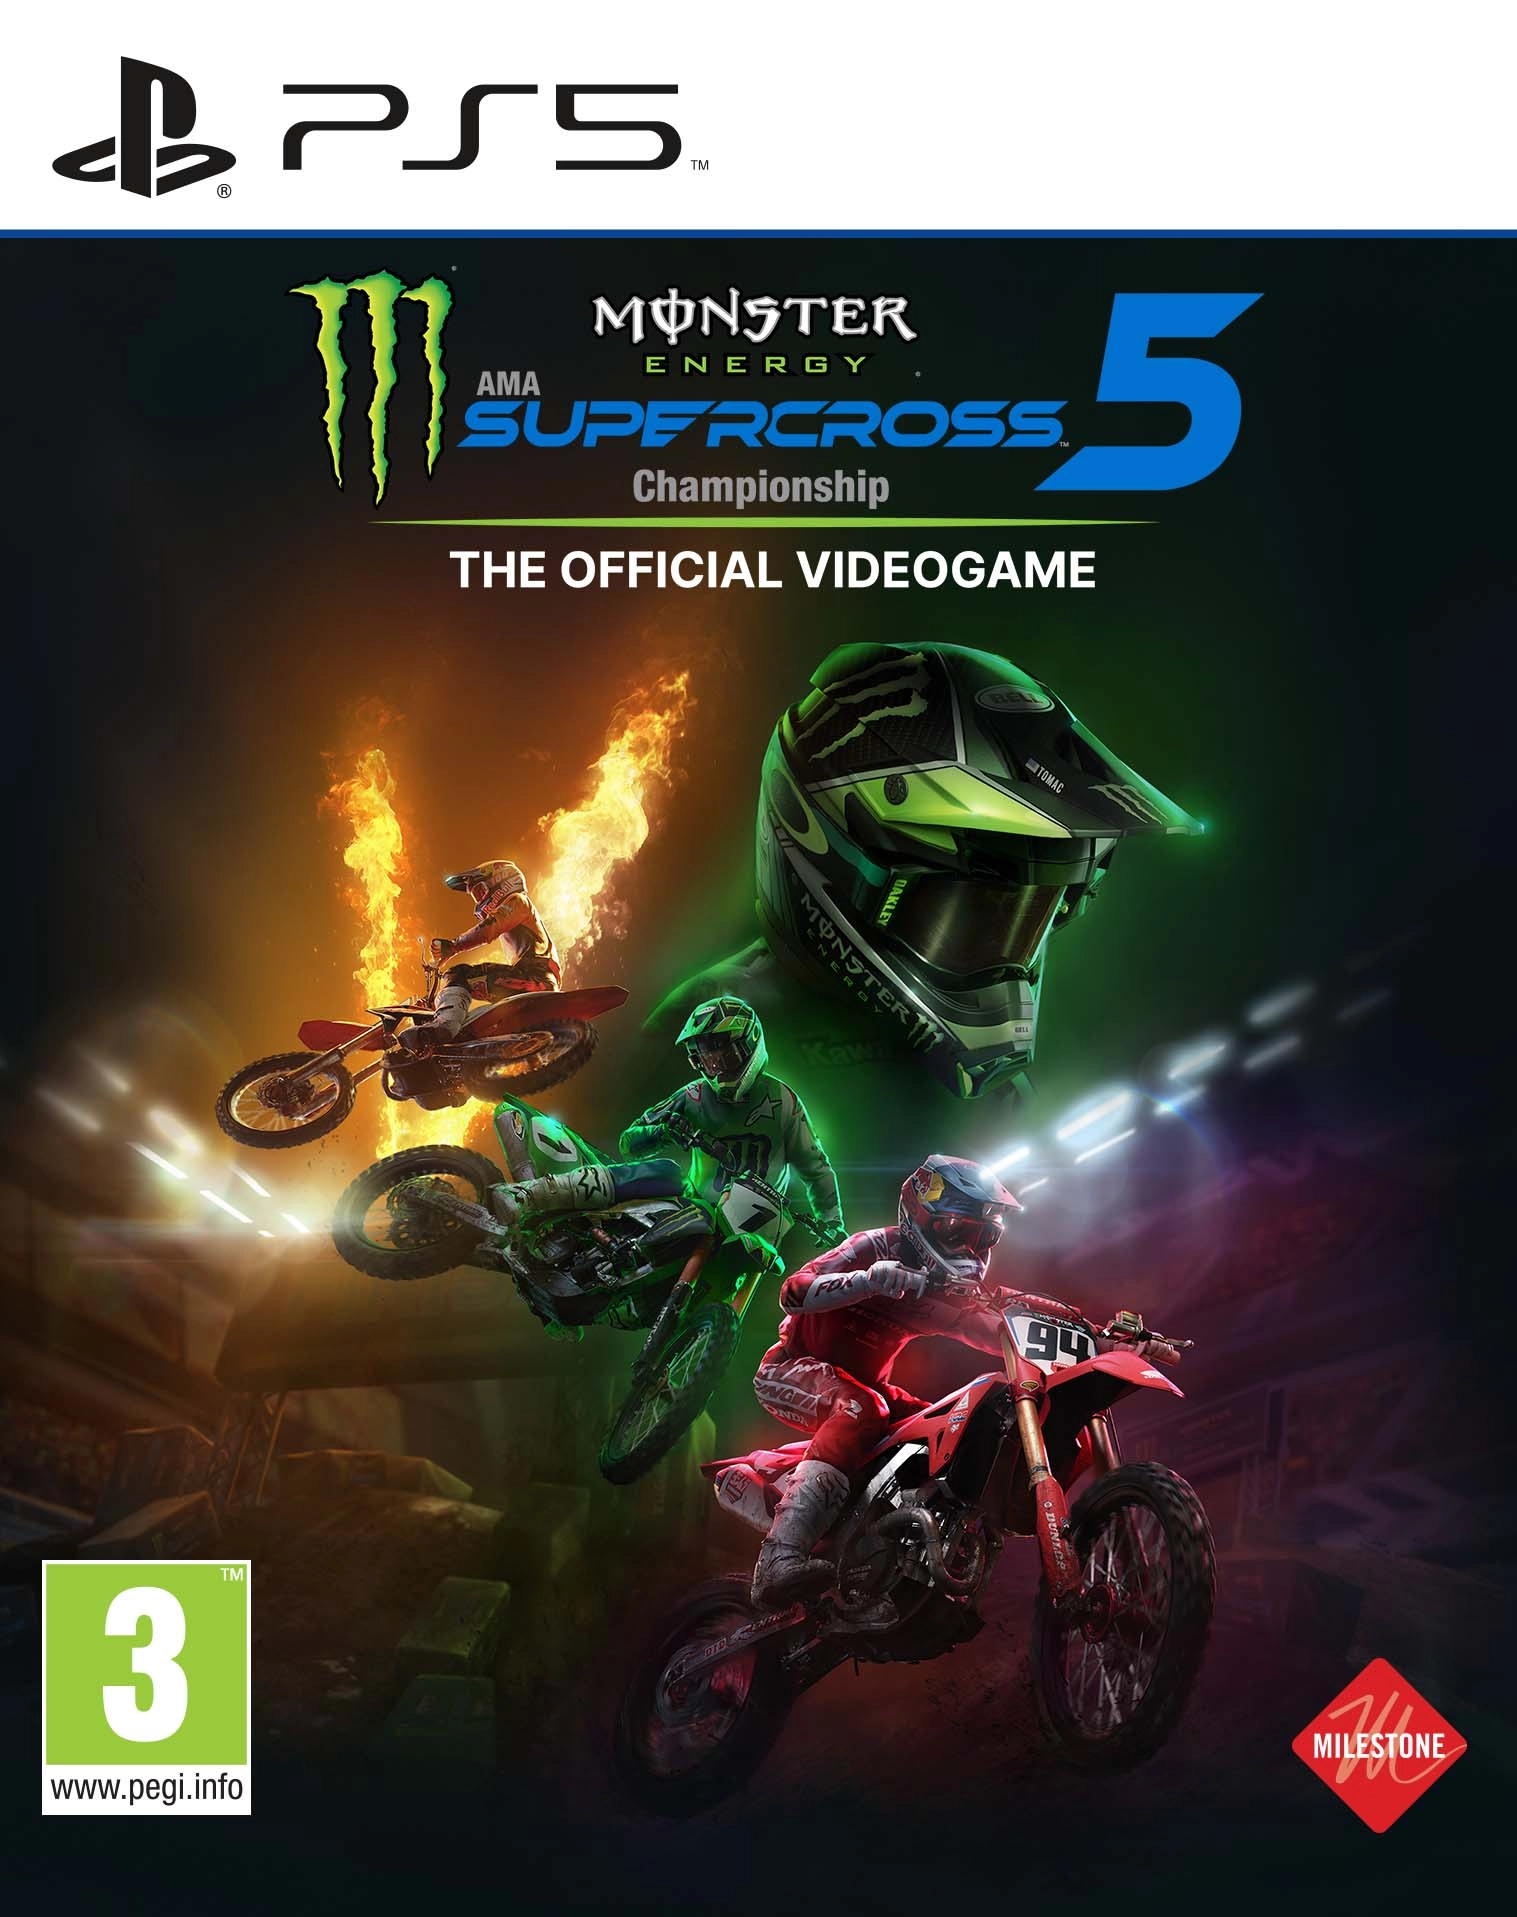 Monster Energy Supercross 5 (PS5), Milestone